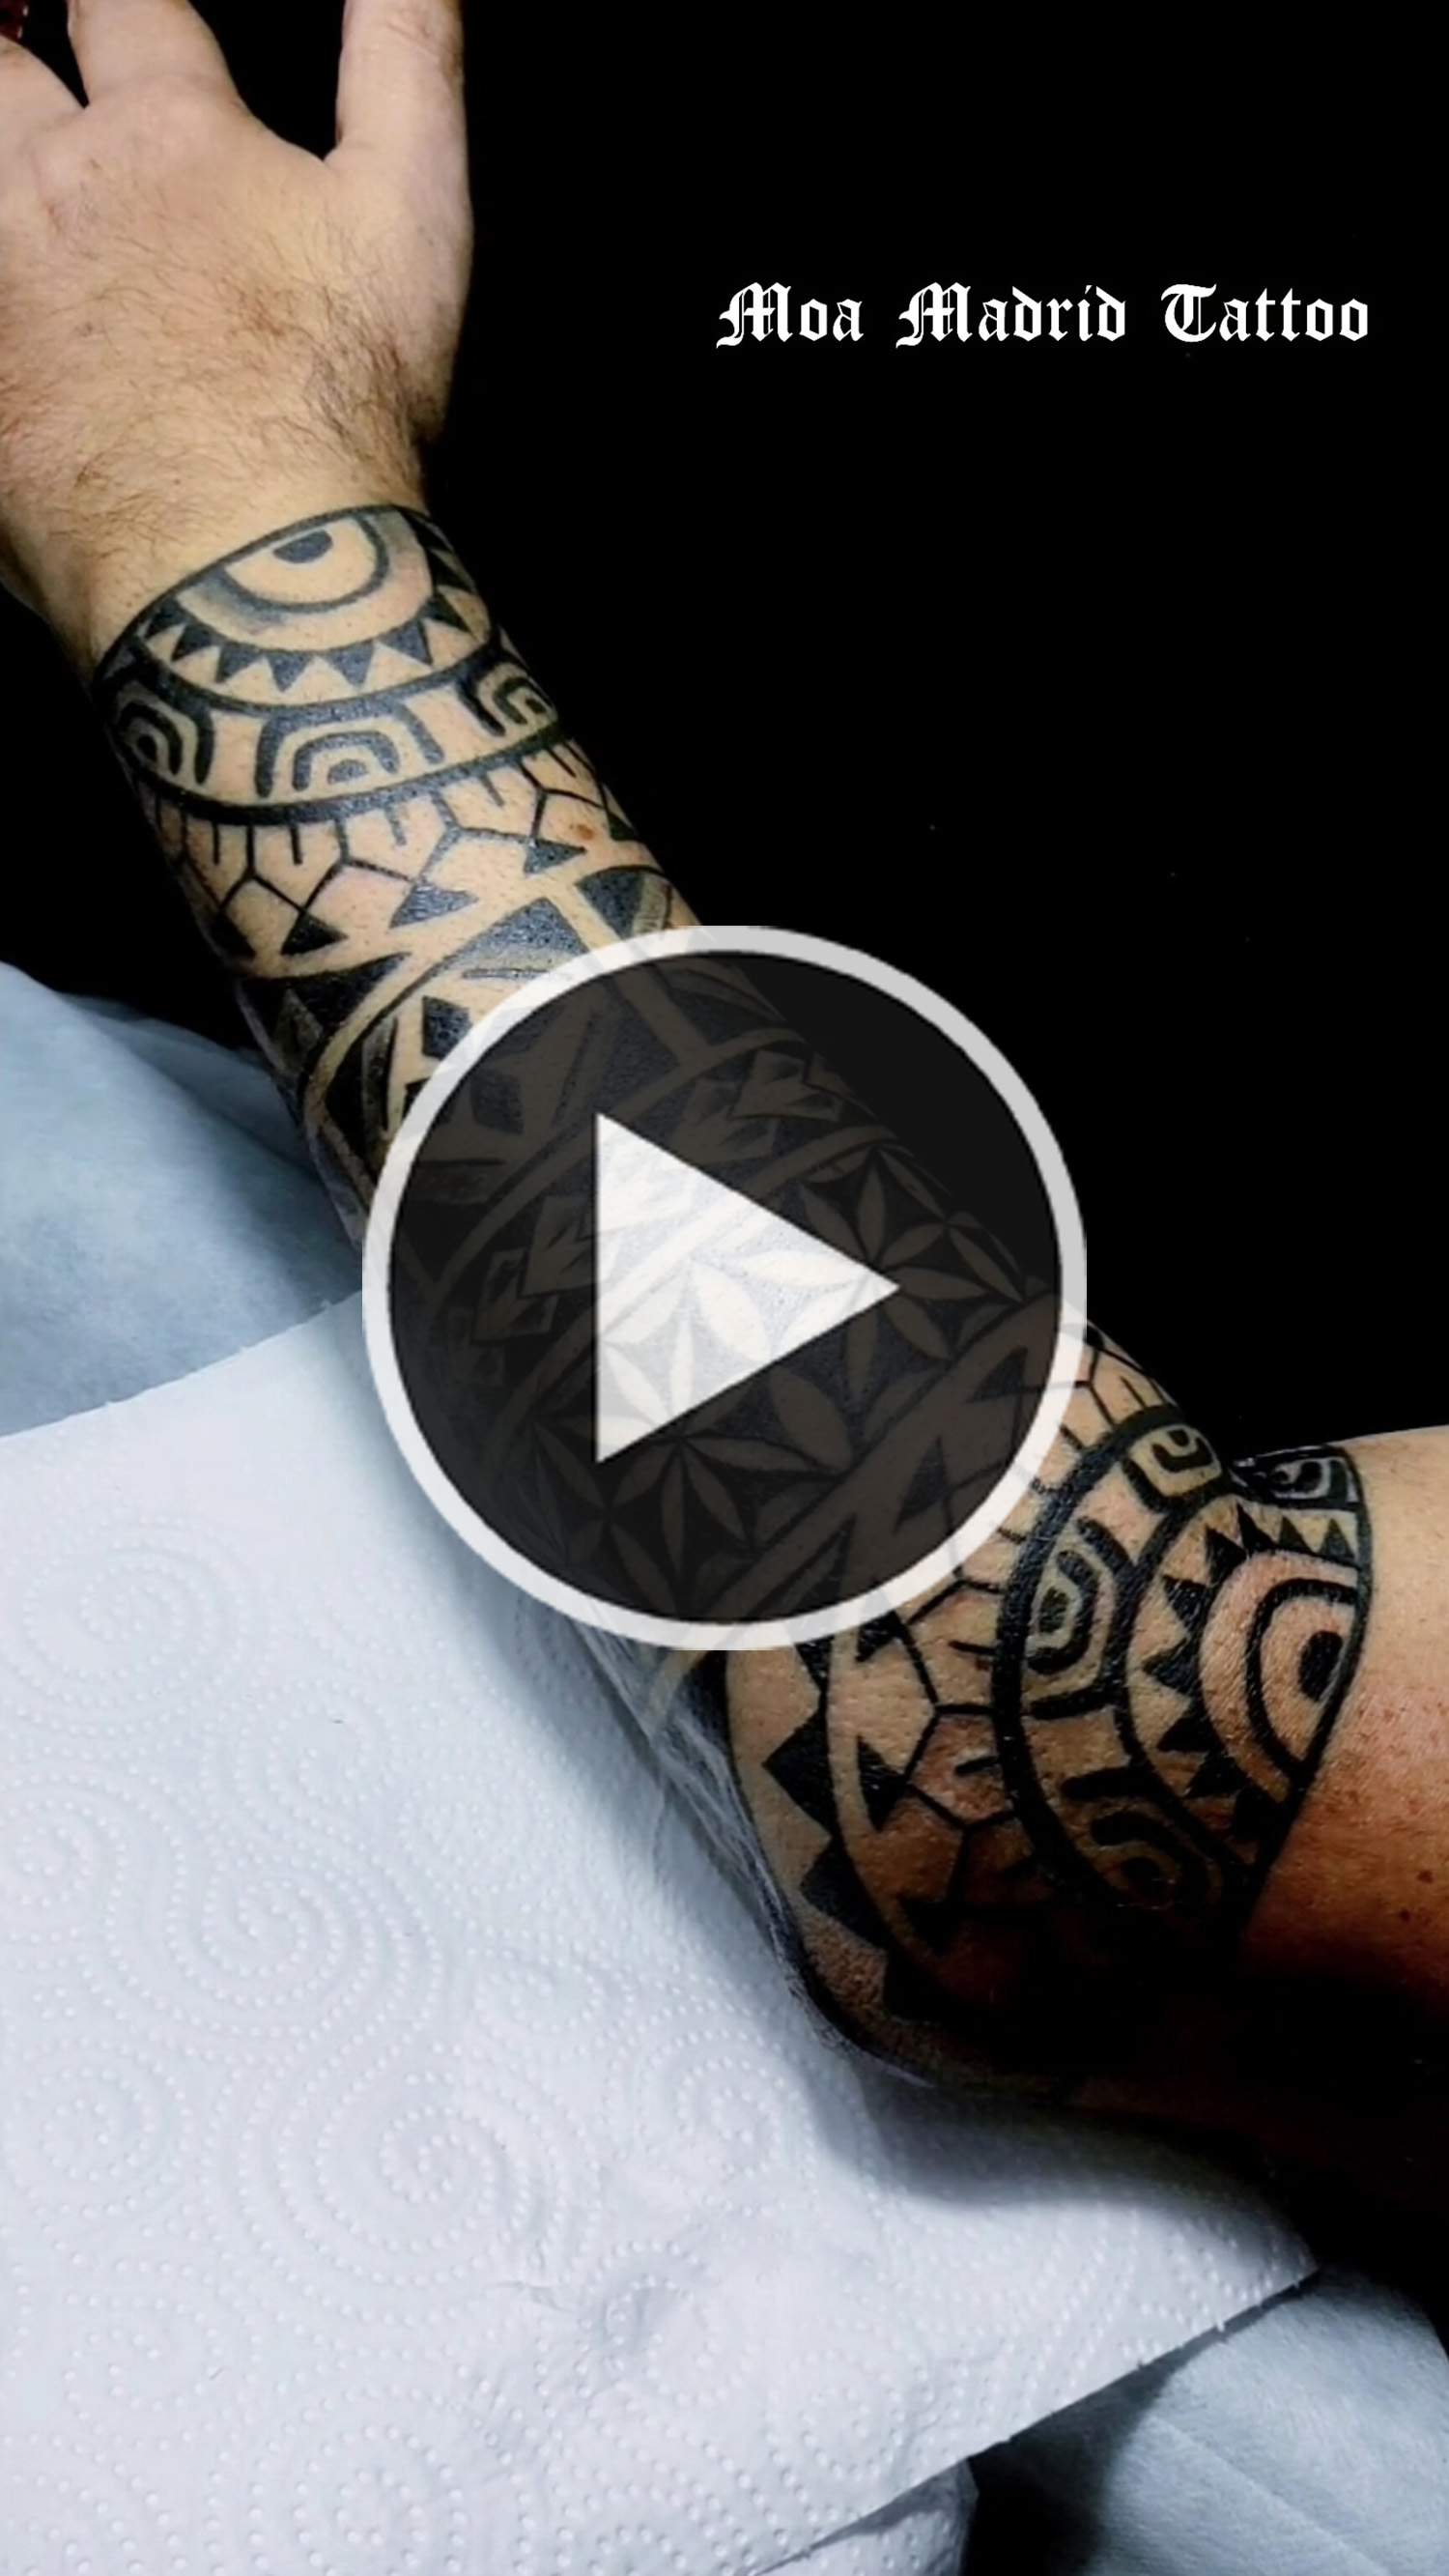 Nuevo estilo de tatuaje fusión de estilos polinesio y geométrico